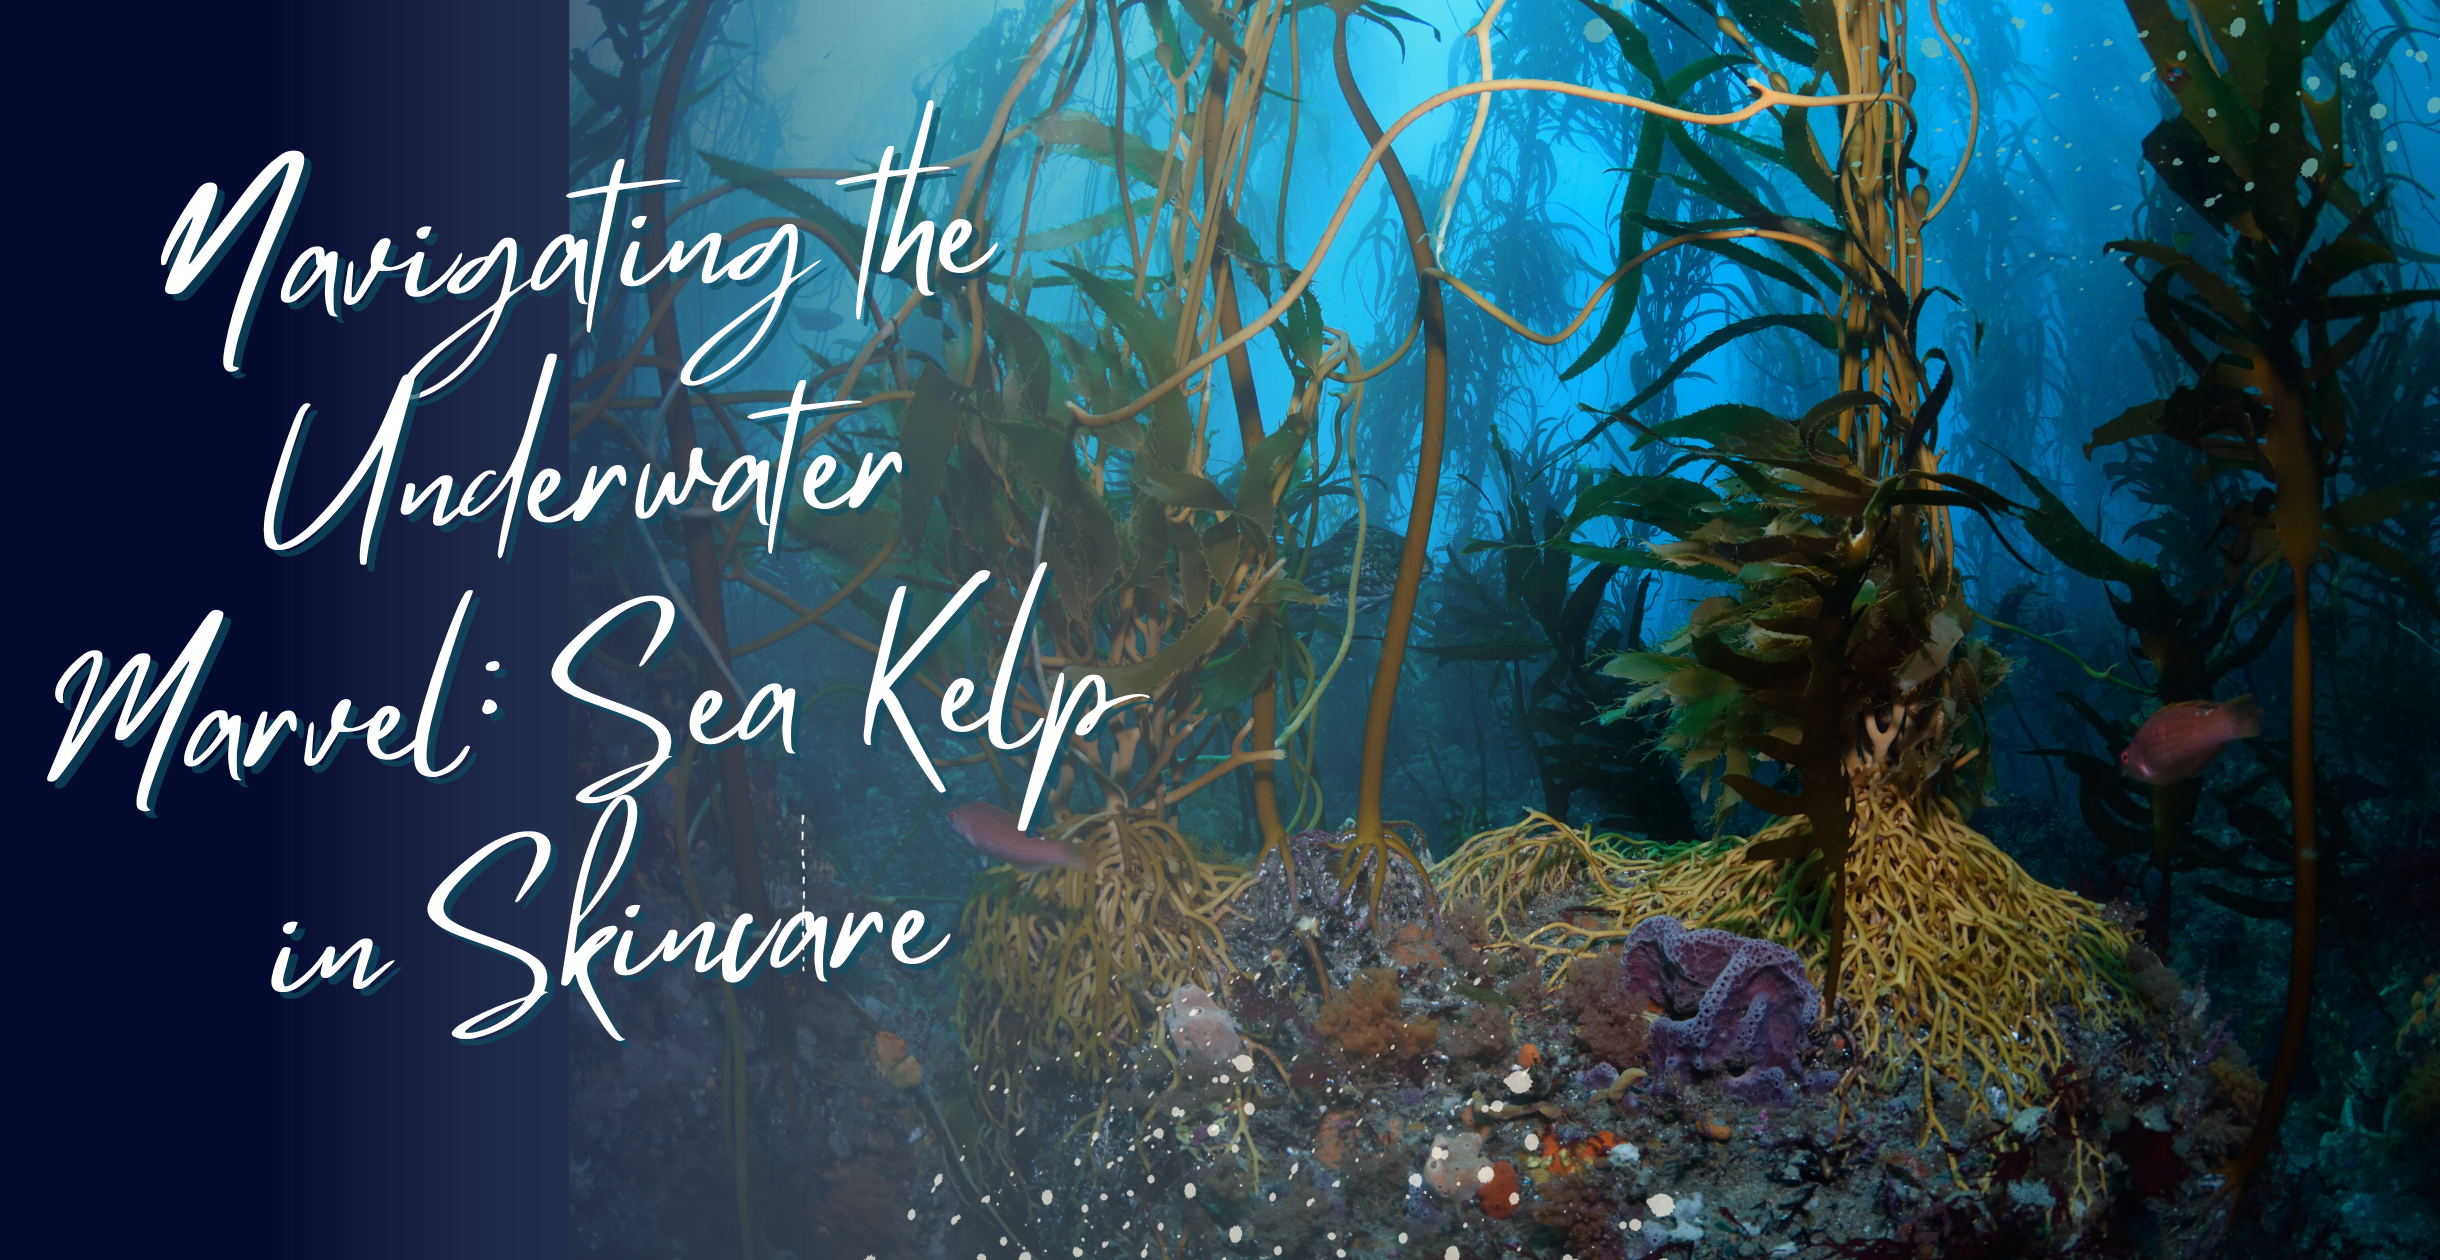 Navigating the Underwater Marvel: Sea Kelp in Skincare